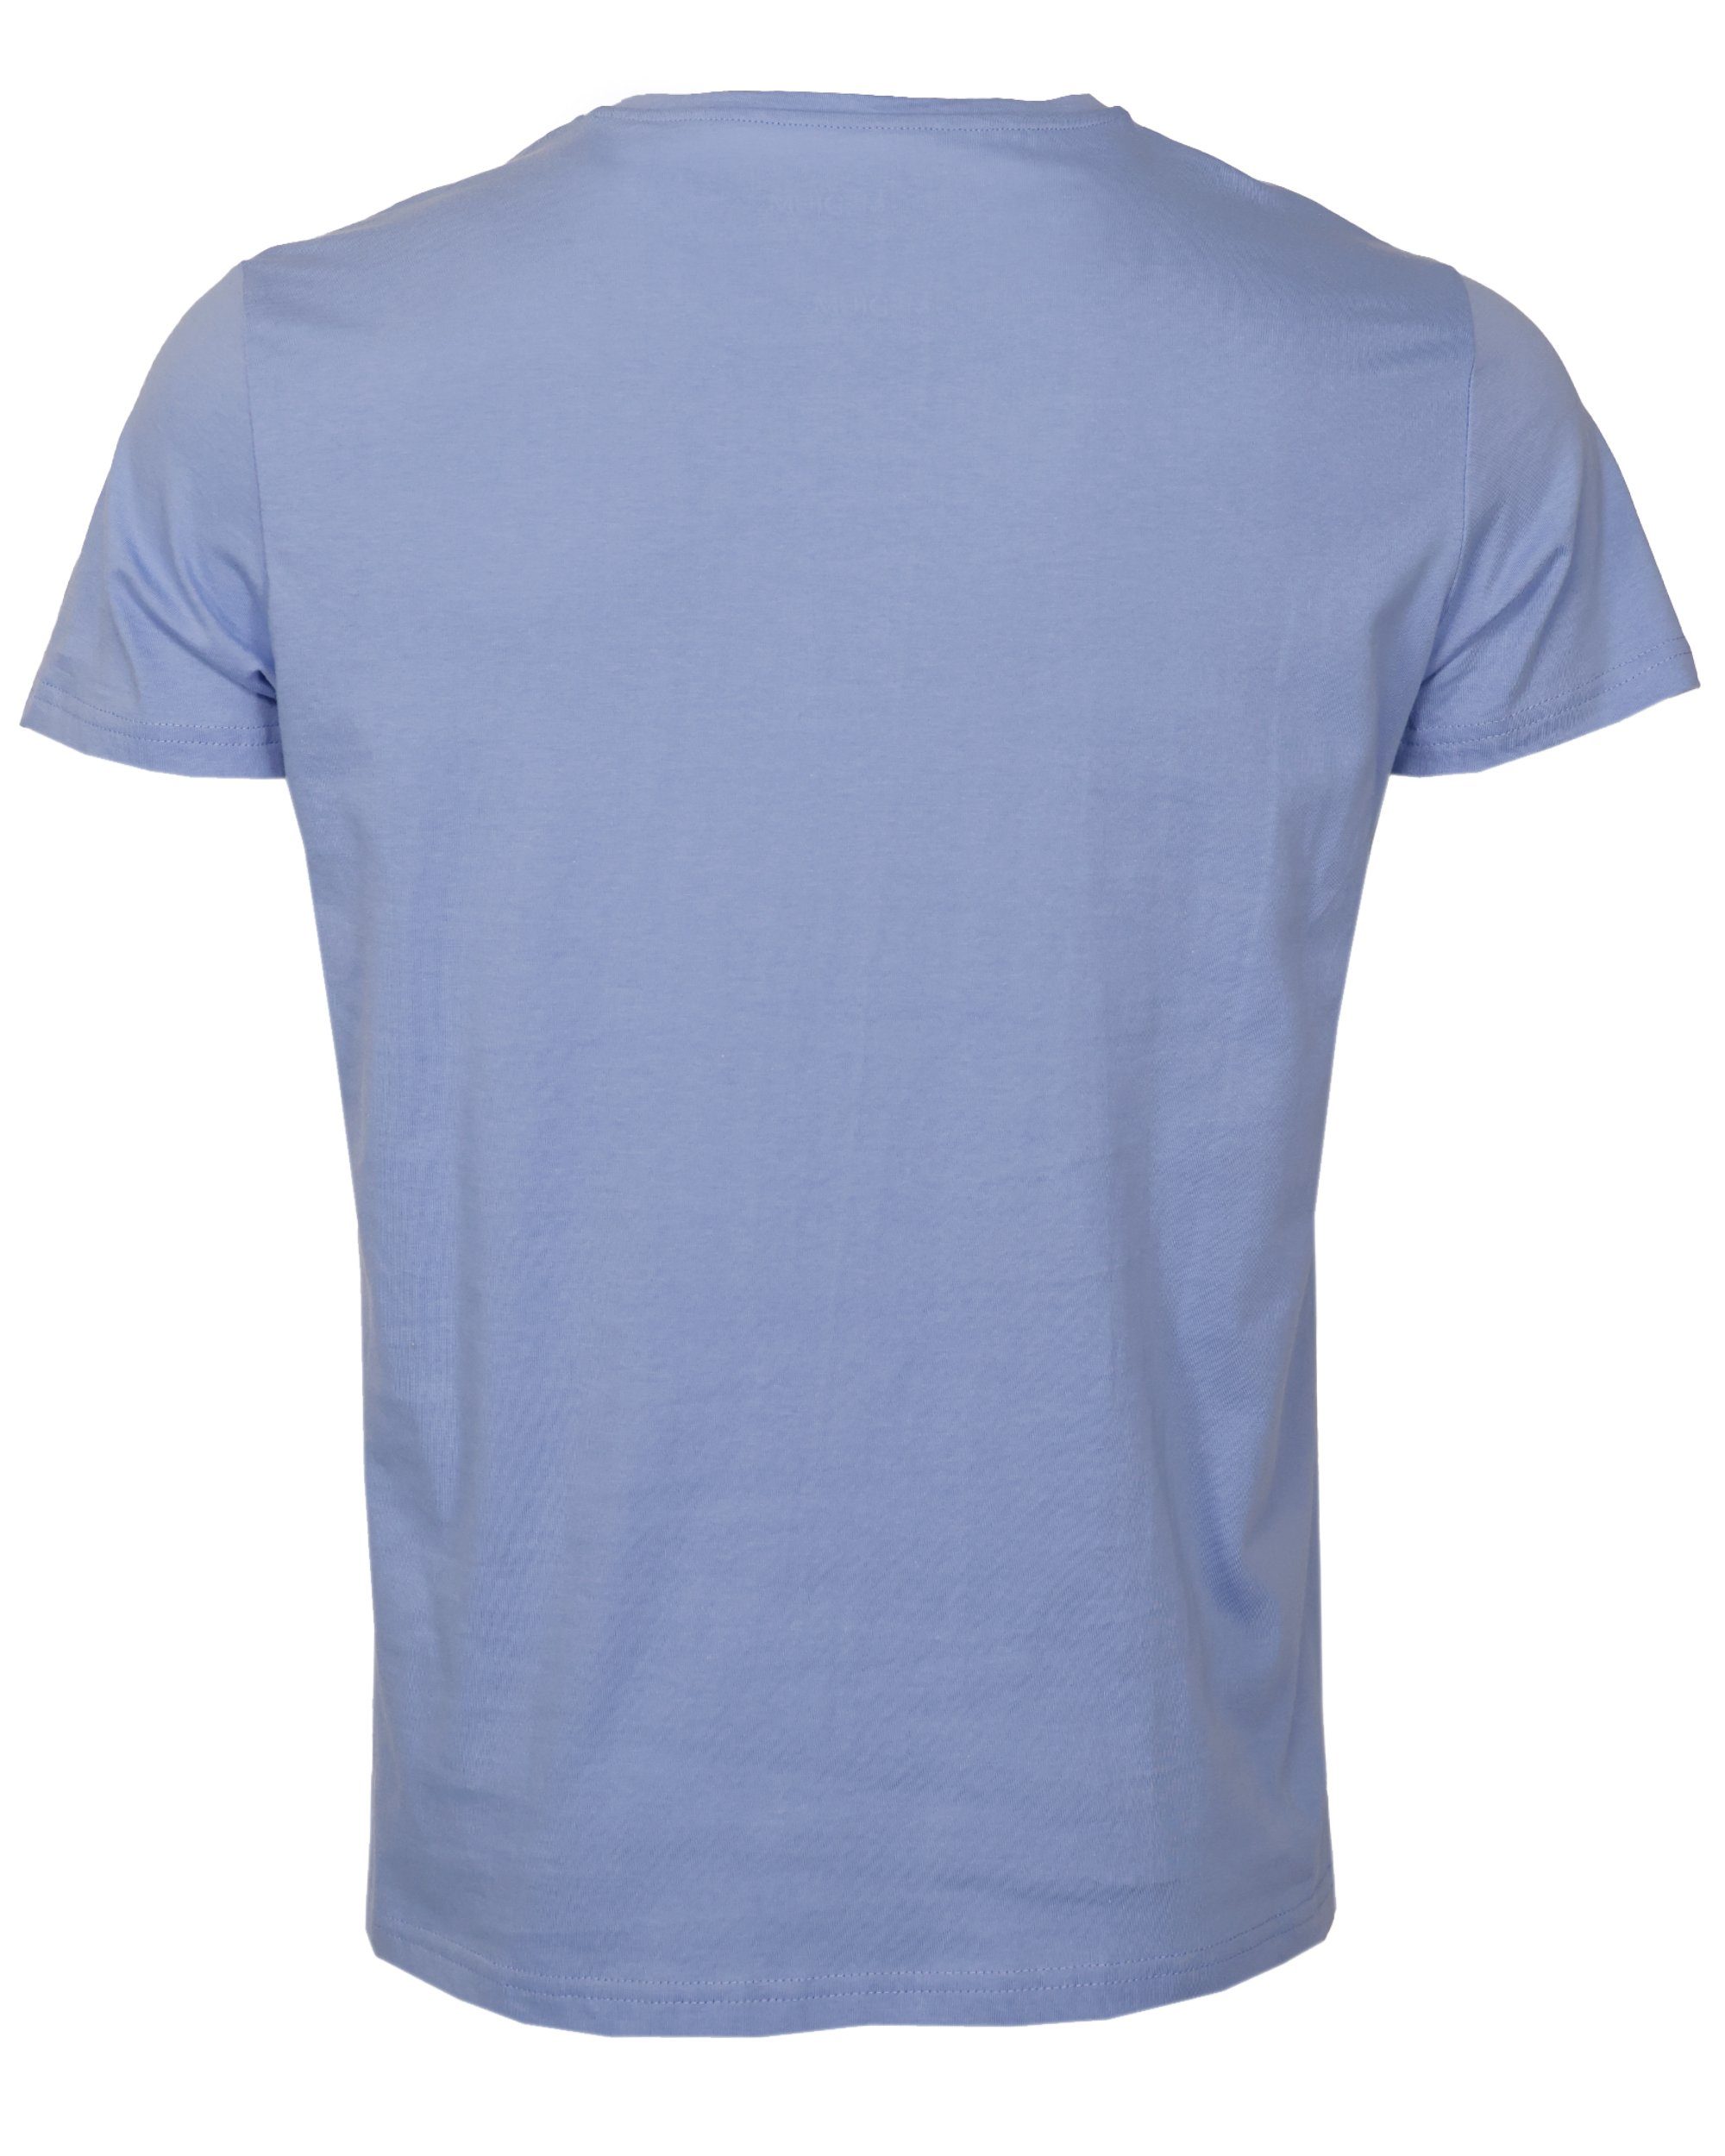 T-Shirt TOP TG20213036 GUN blue light